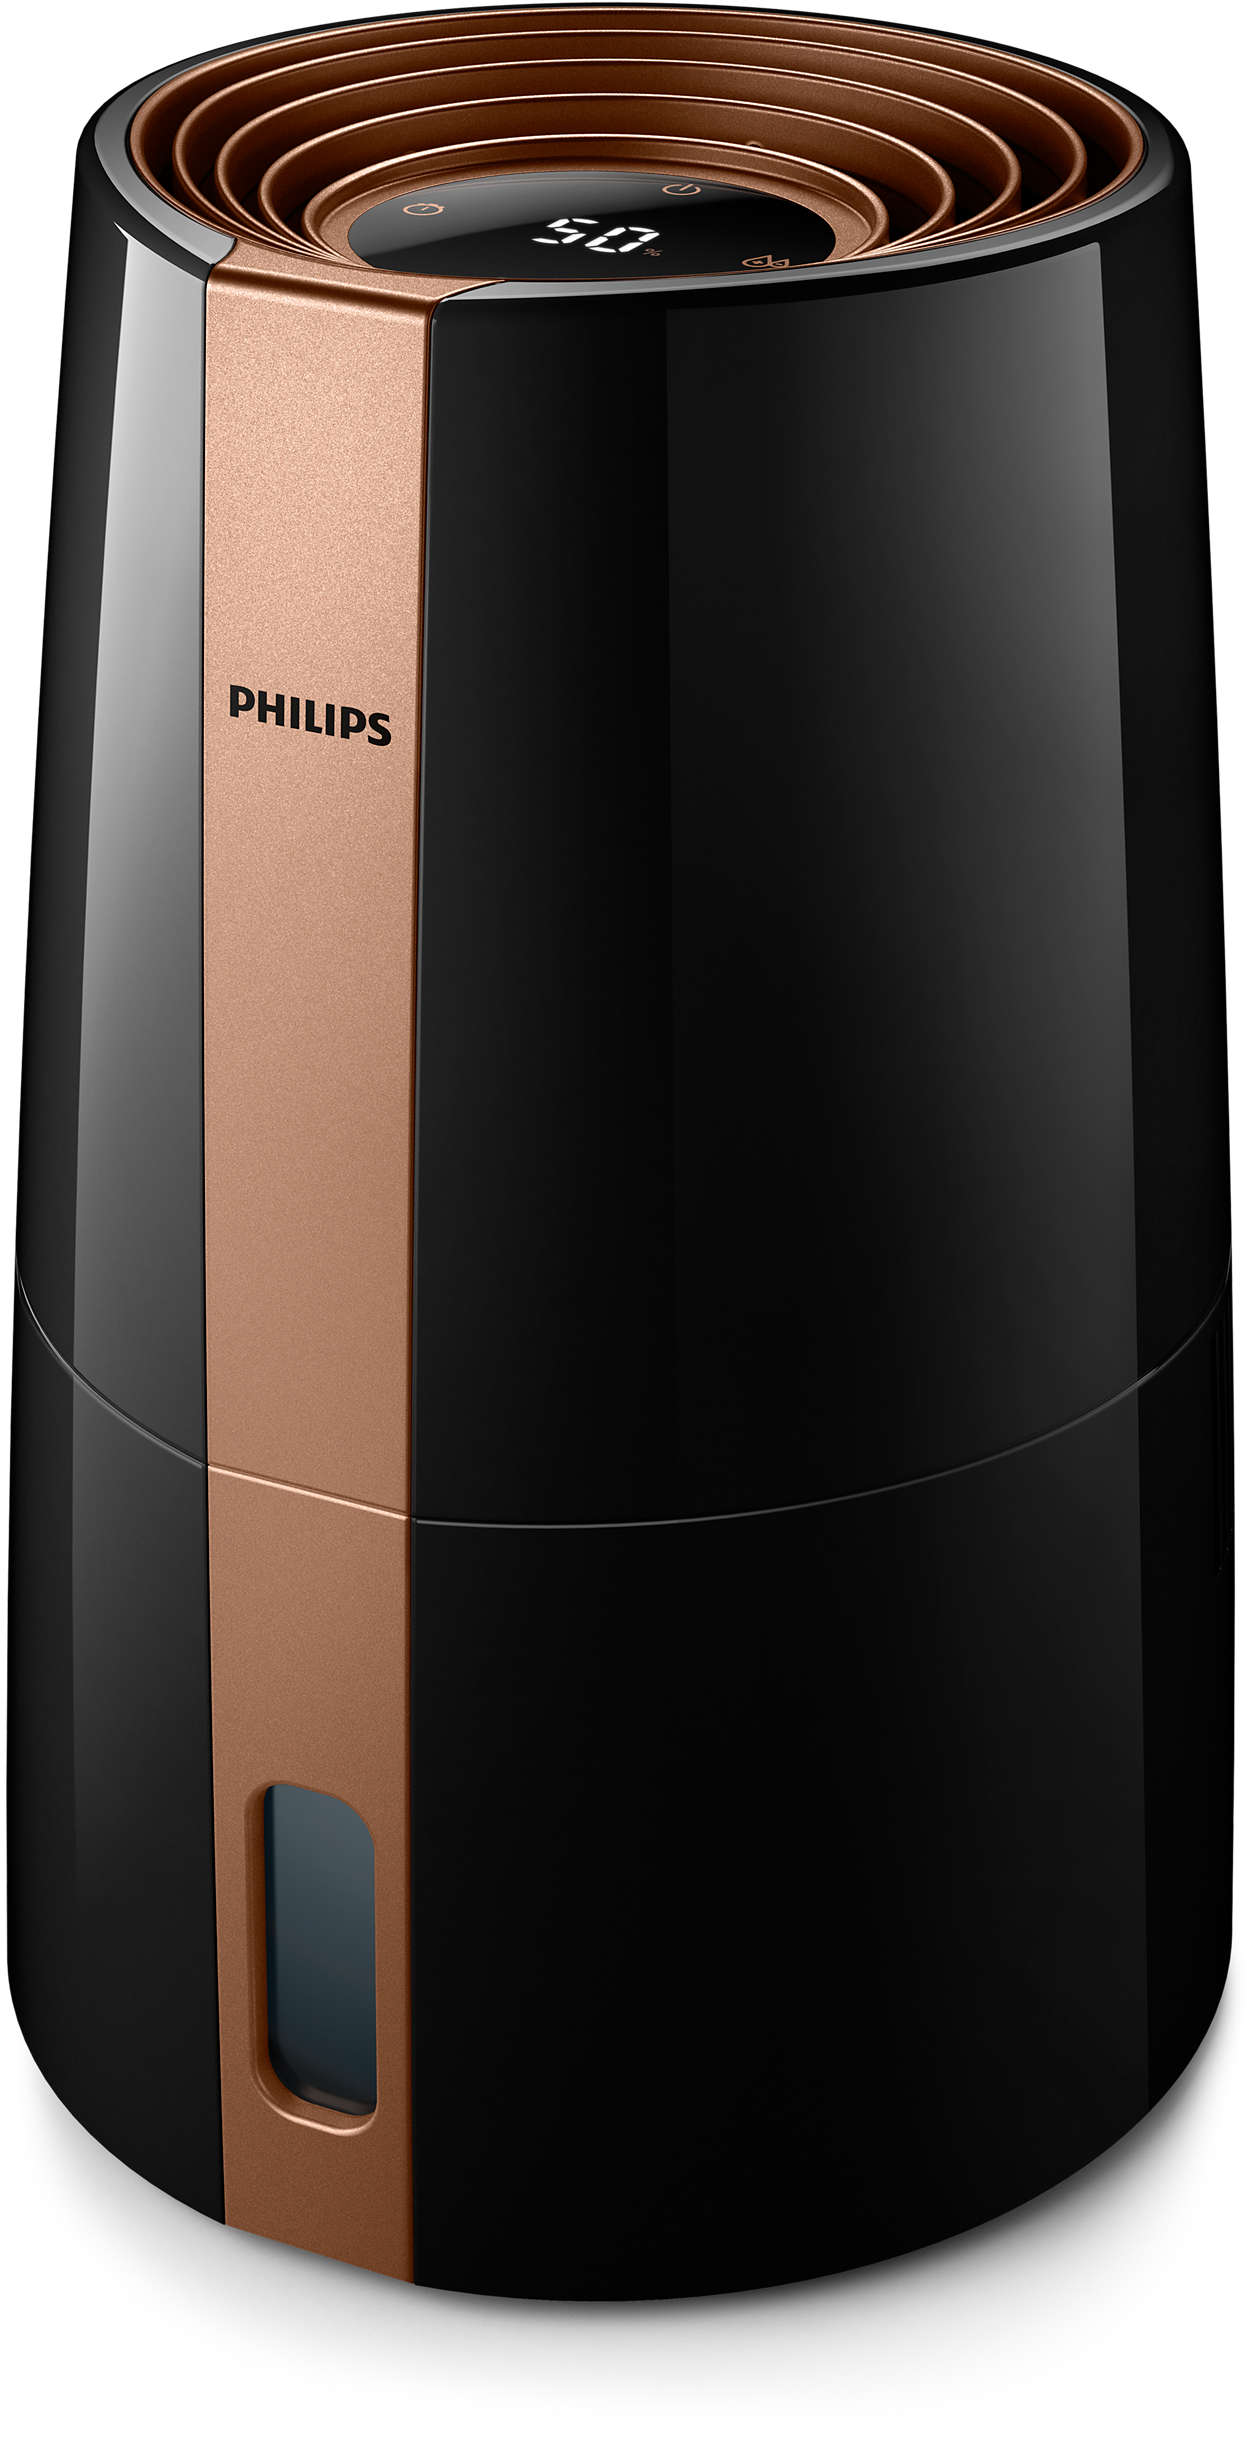 Zdravější vzduch s Philips